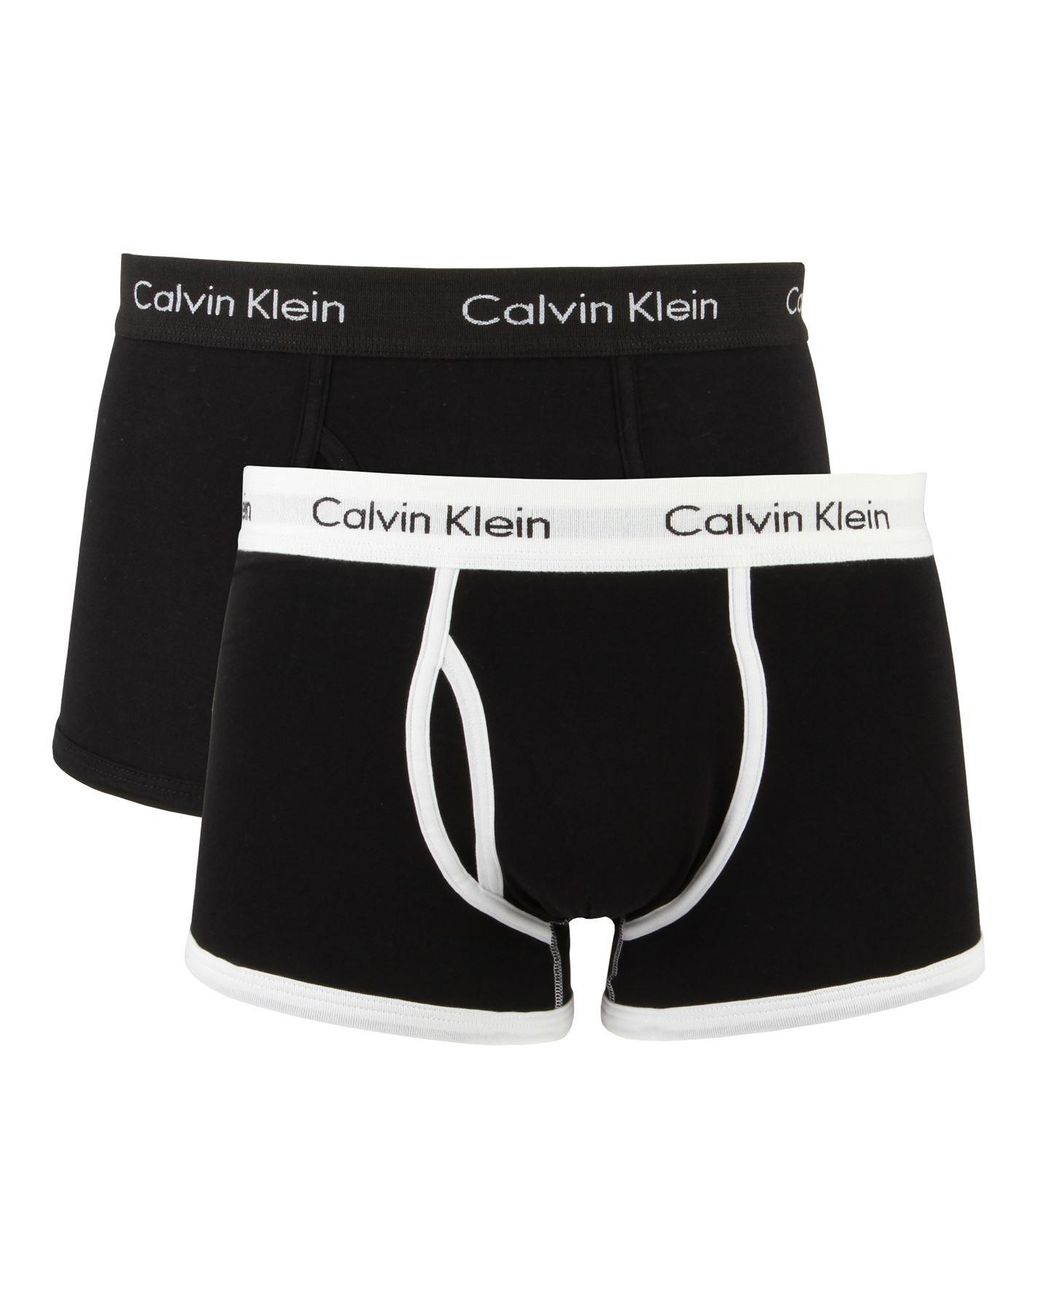 Calvin Klein 365 2 Pack Boxers S Black/black Small for Men | Lyst UK